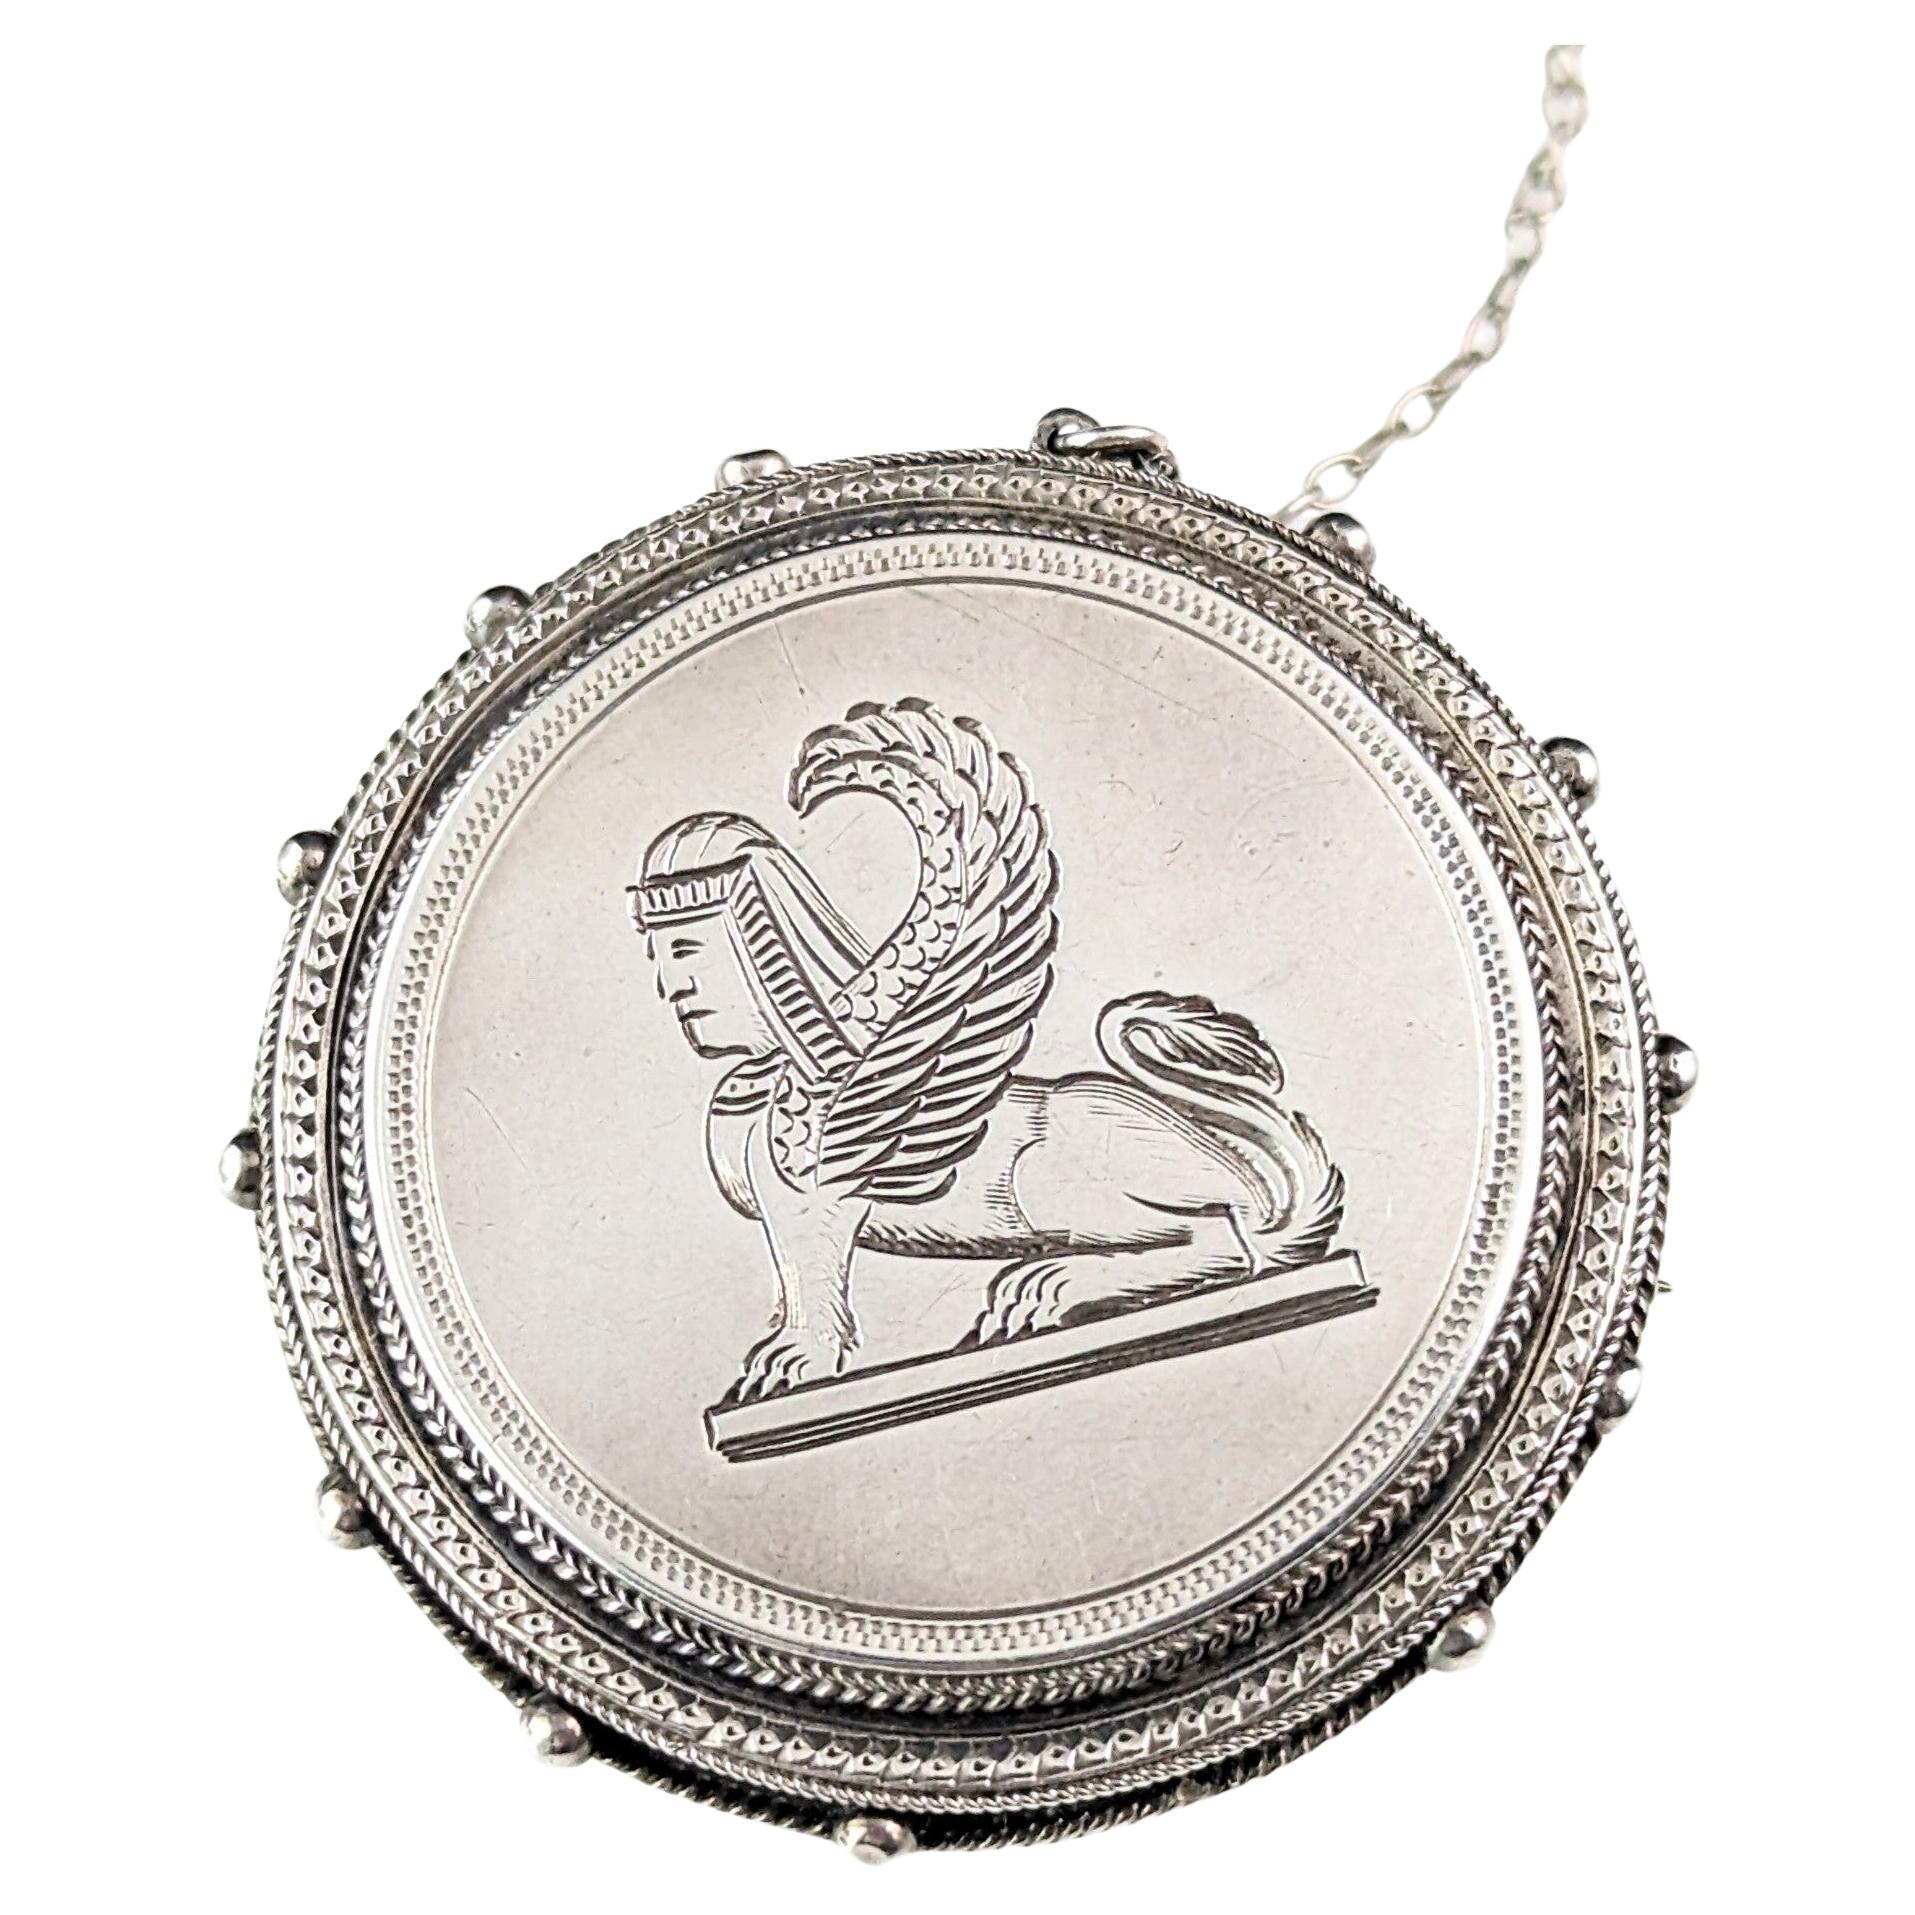 Antique Victorian Assyrian revival brooch, sterling silver, Lamassu 